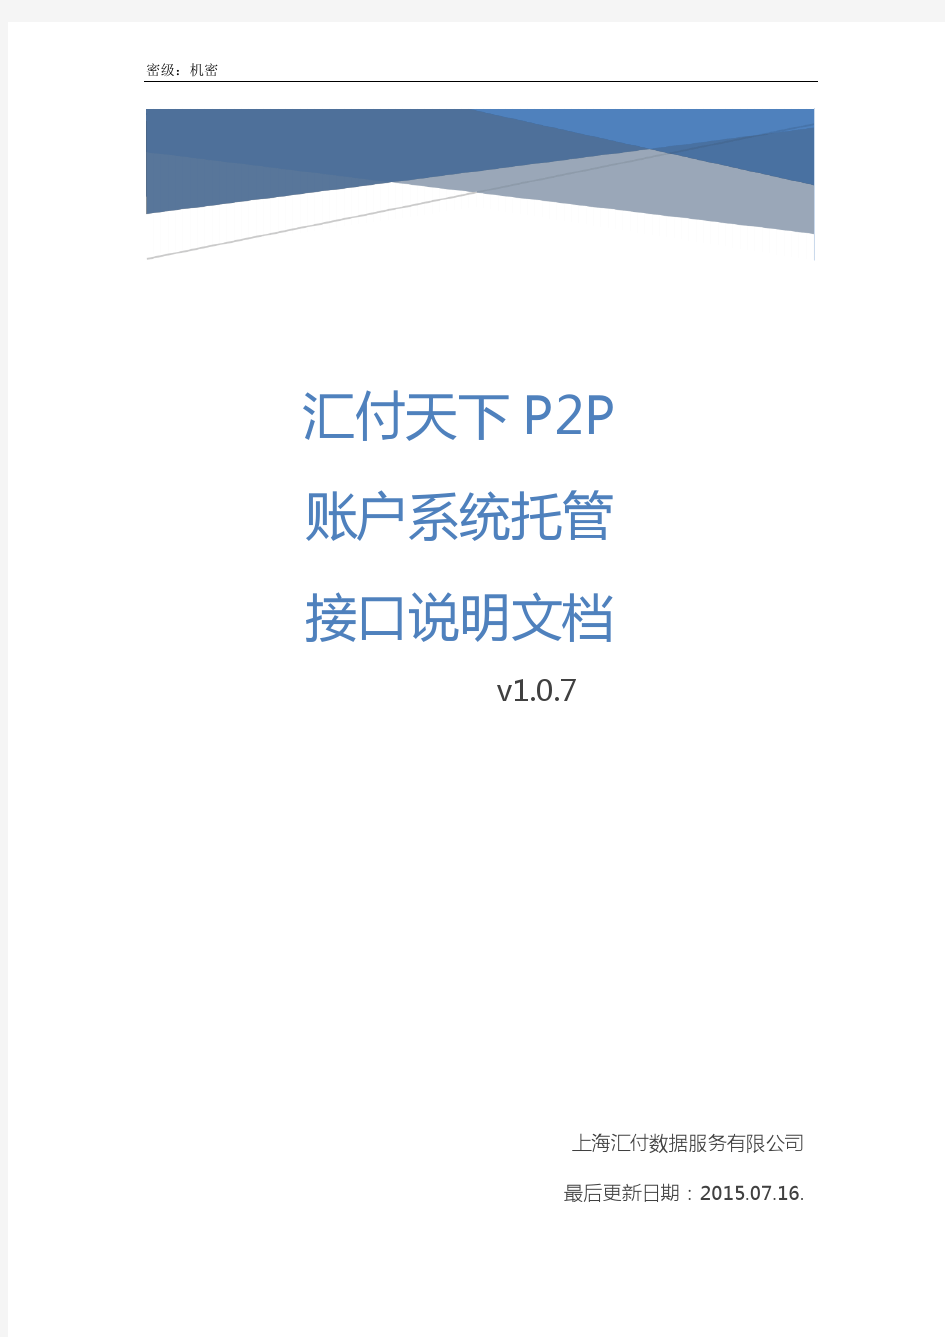 汇付天下P2P账户系统托管接口说明文档 v1.0.7_20150716